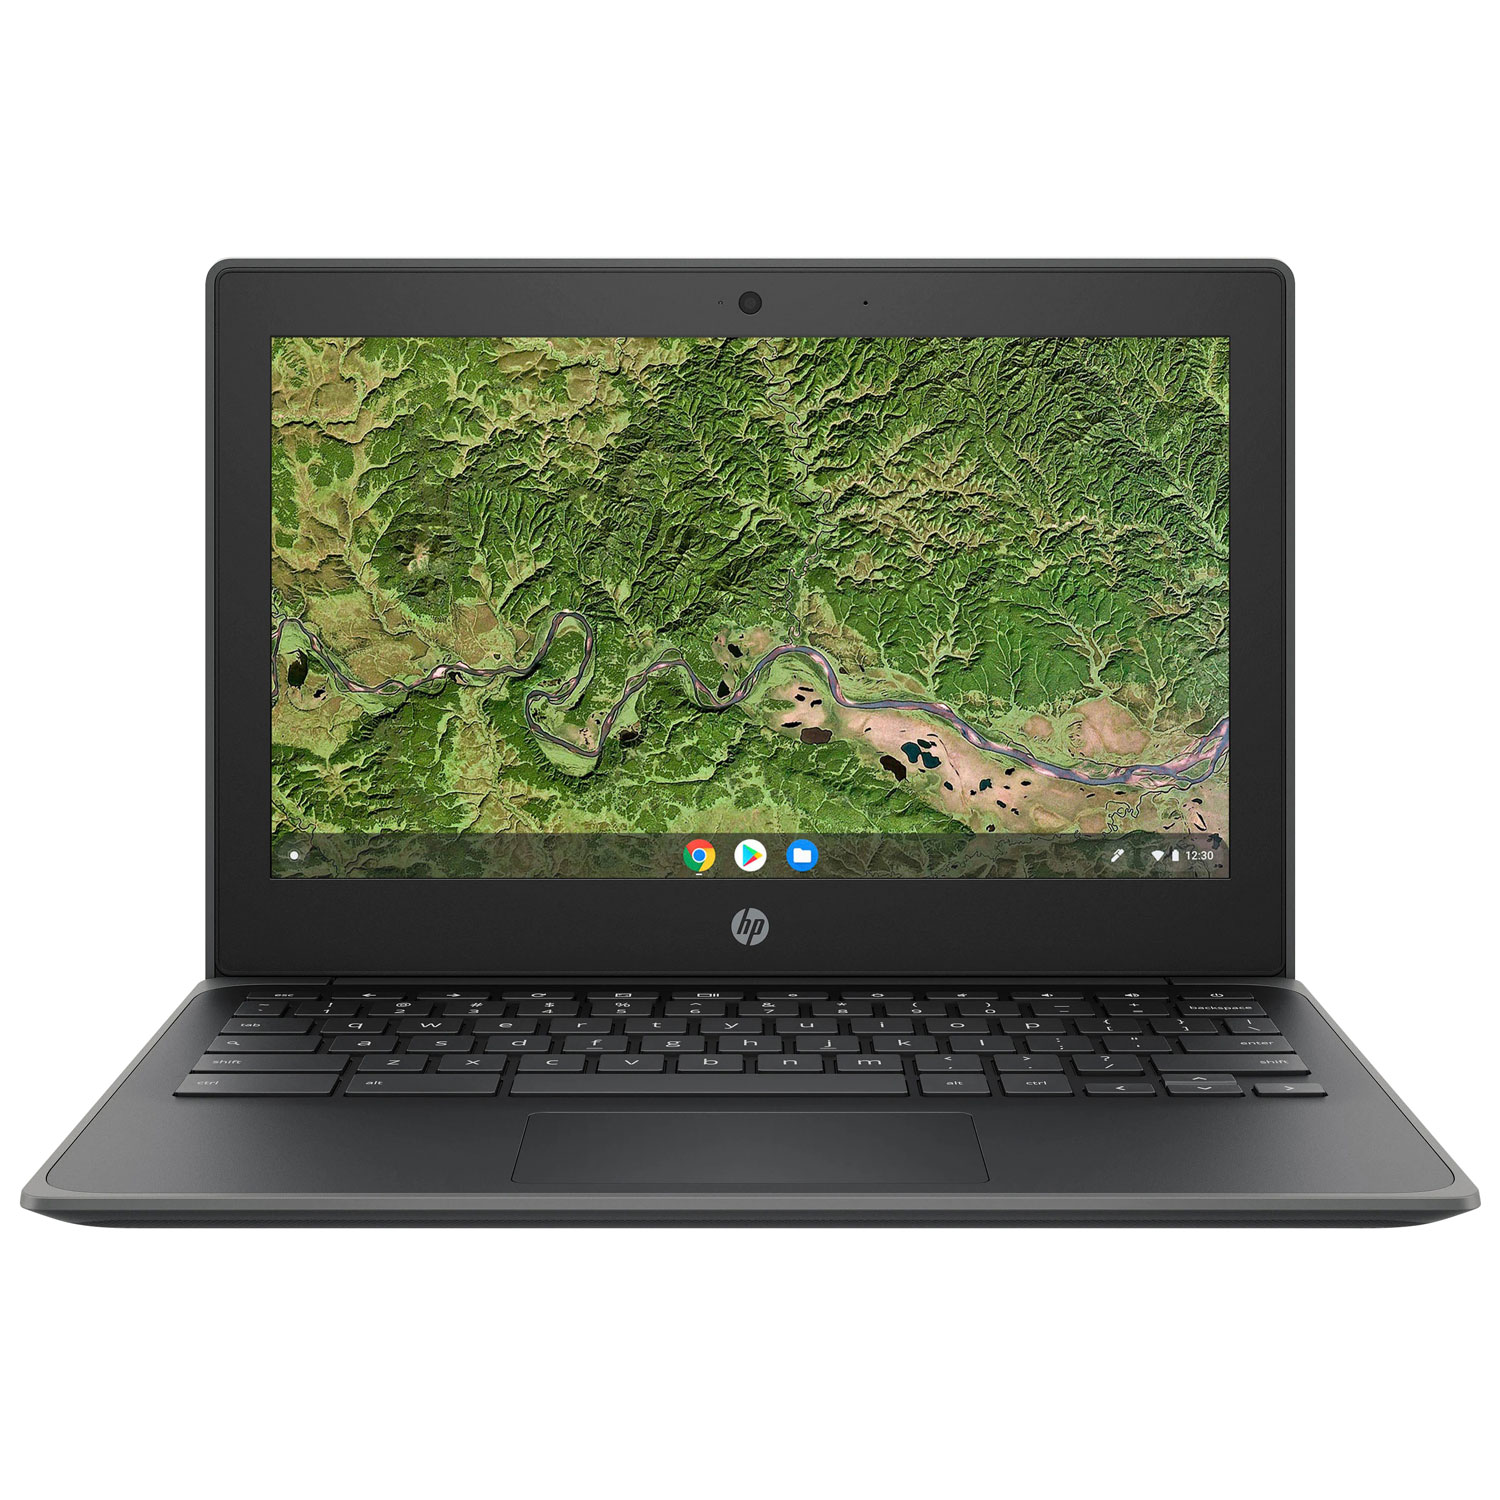 HP G8 EE 11.6" Chromebook - Grey (AMD A4-Series A4-9120C/32GB eMMC/4GB RAM/Chrome OS) - English